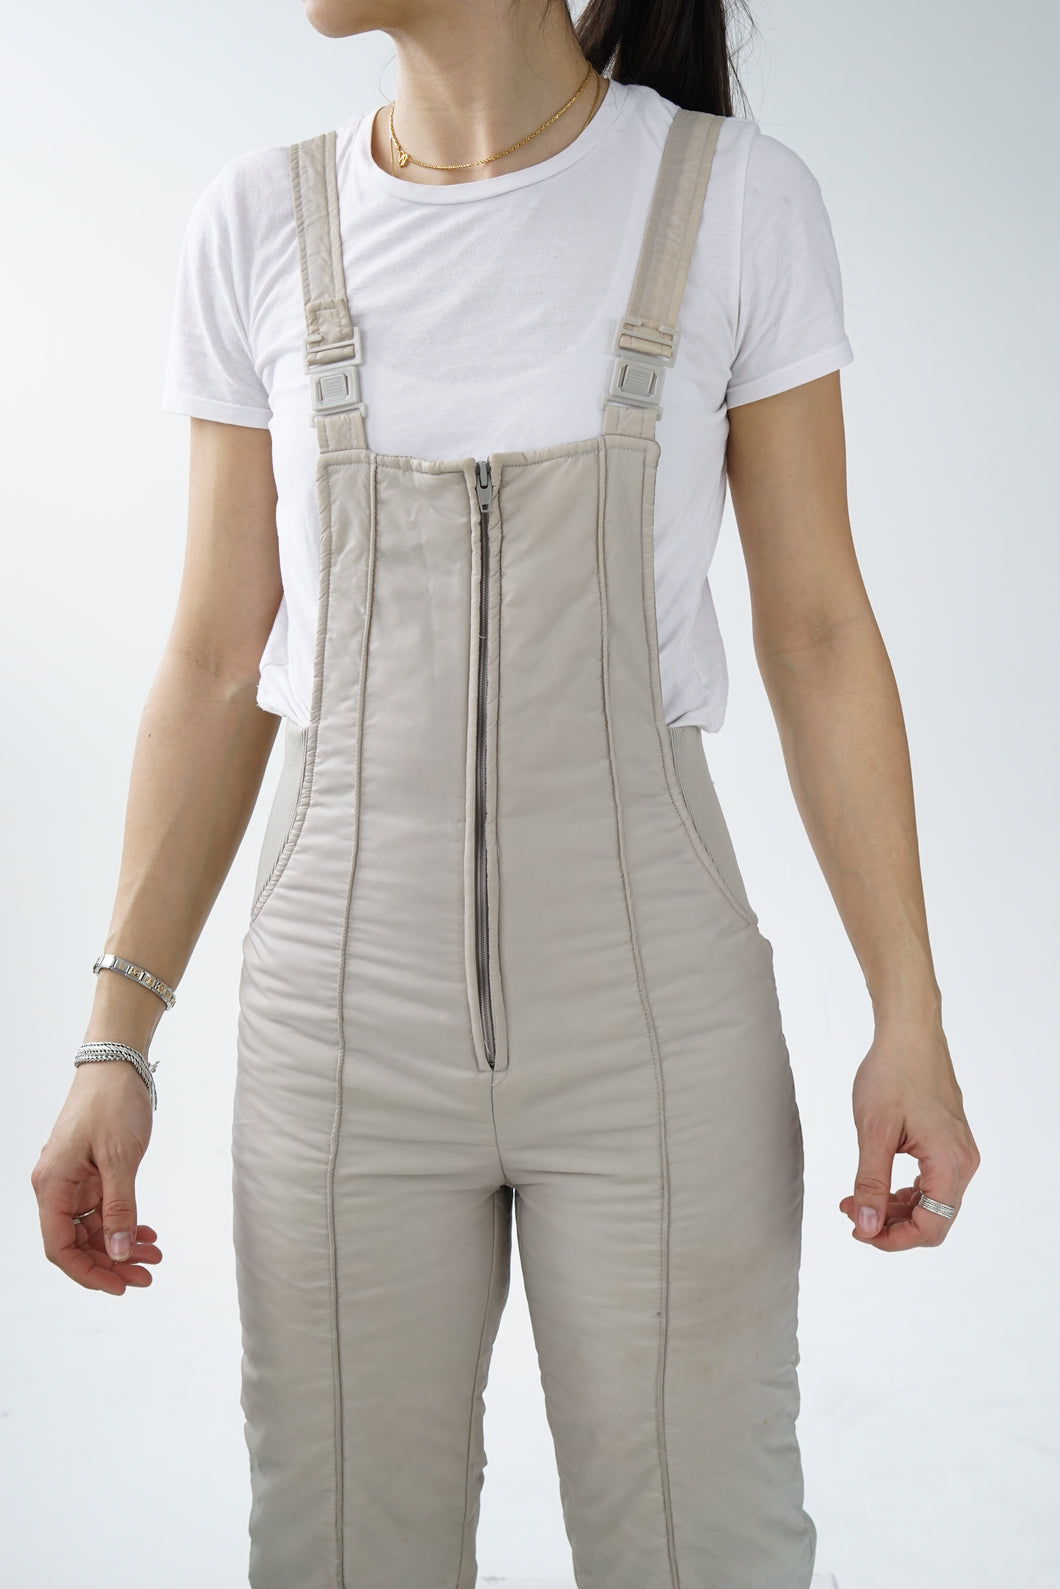 Pantalon de neige salopette vintage SkiOuiSki gris beige pour femme taille S